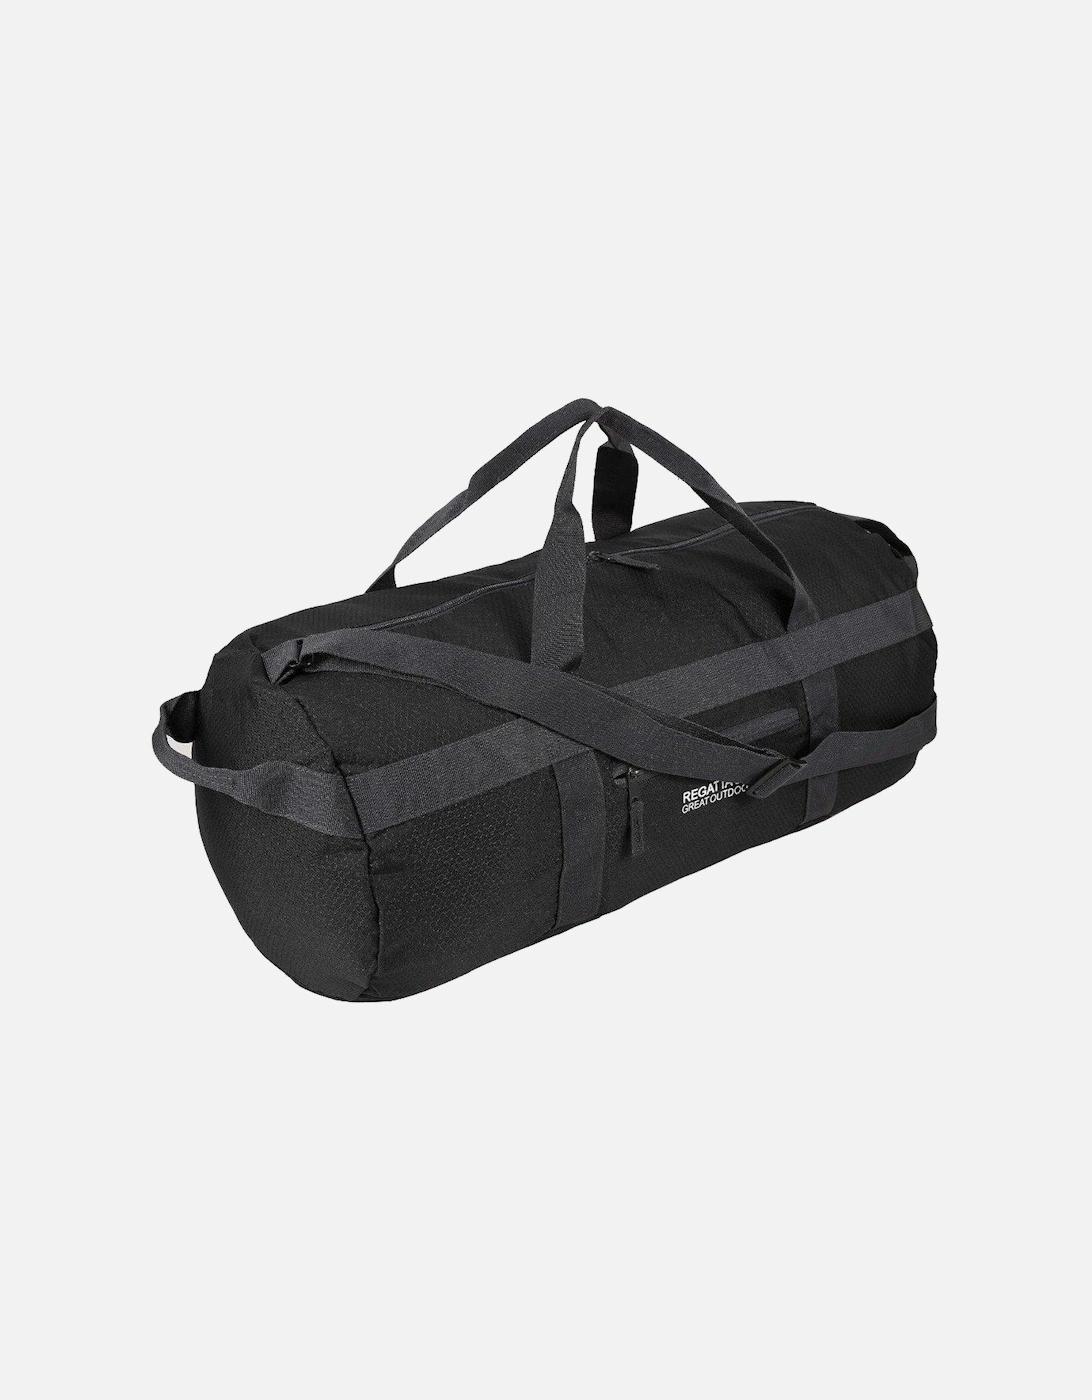 Packaway Duffel Bag (60L), 4 of 3